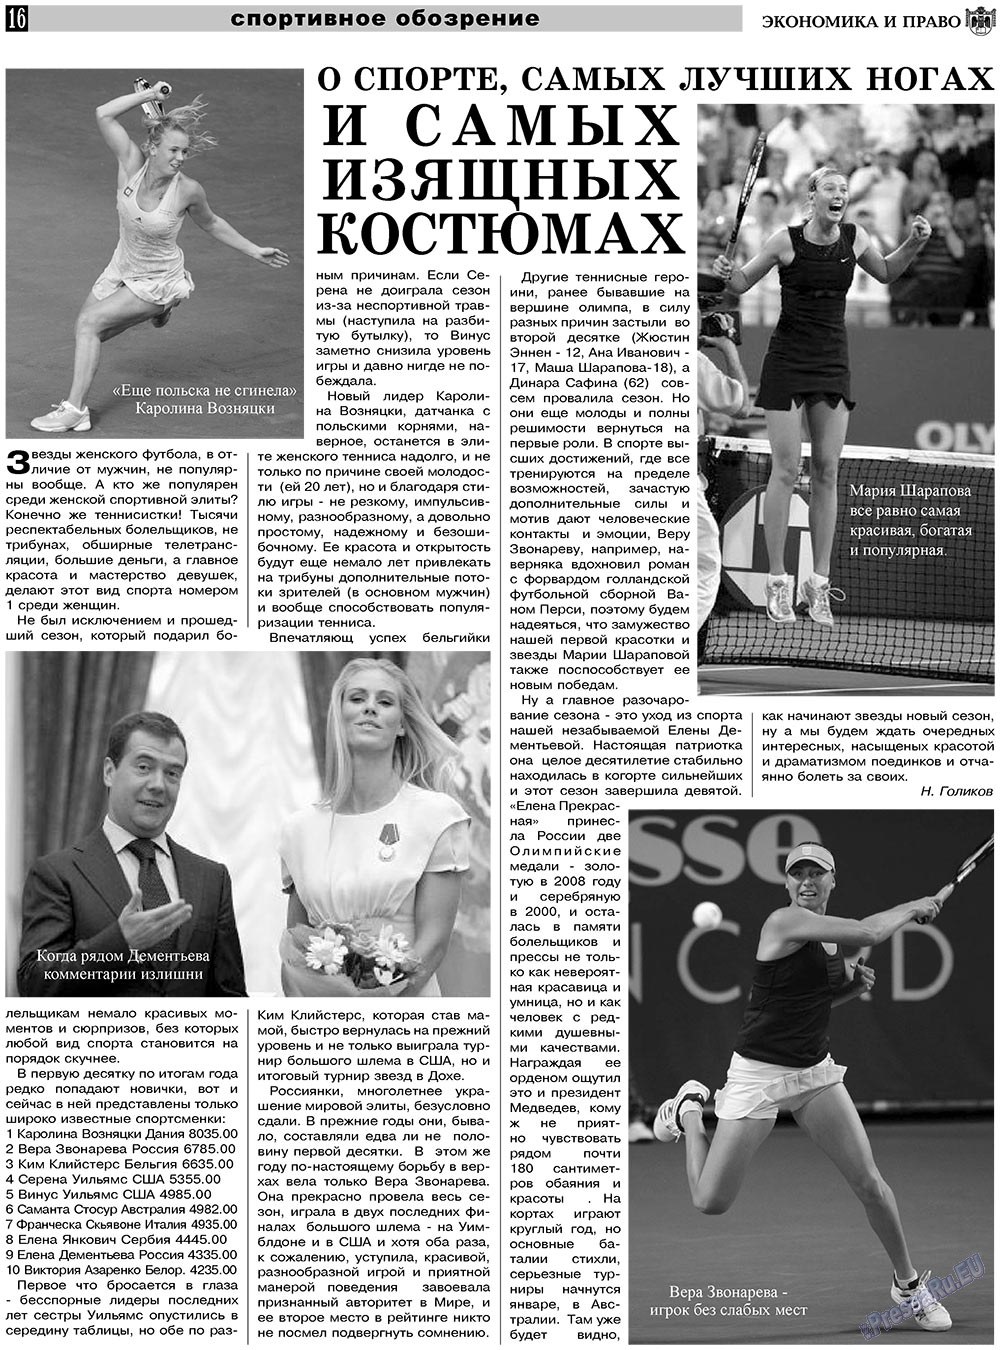 Экономика и право, газета. 2010 №12 стр.16